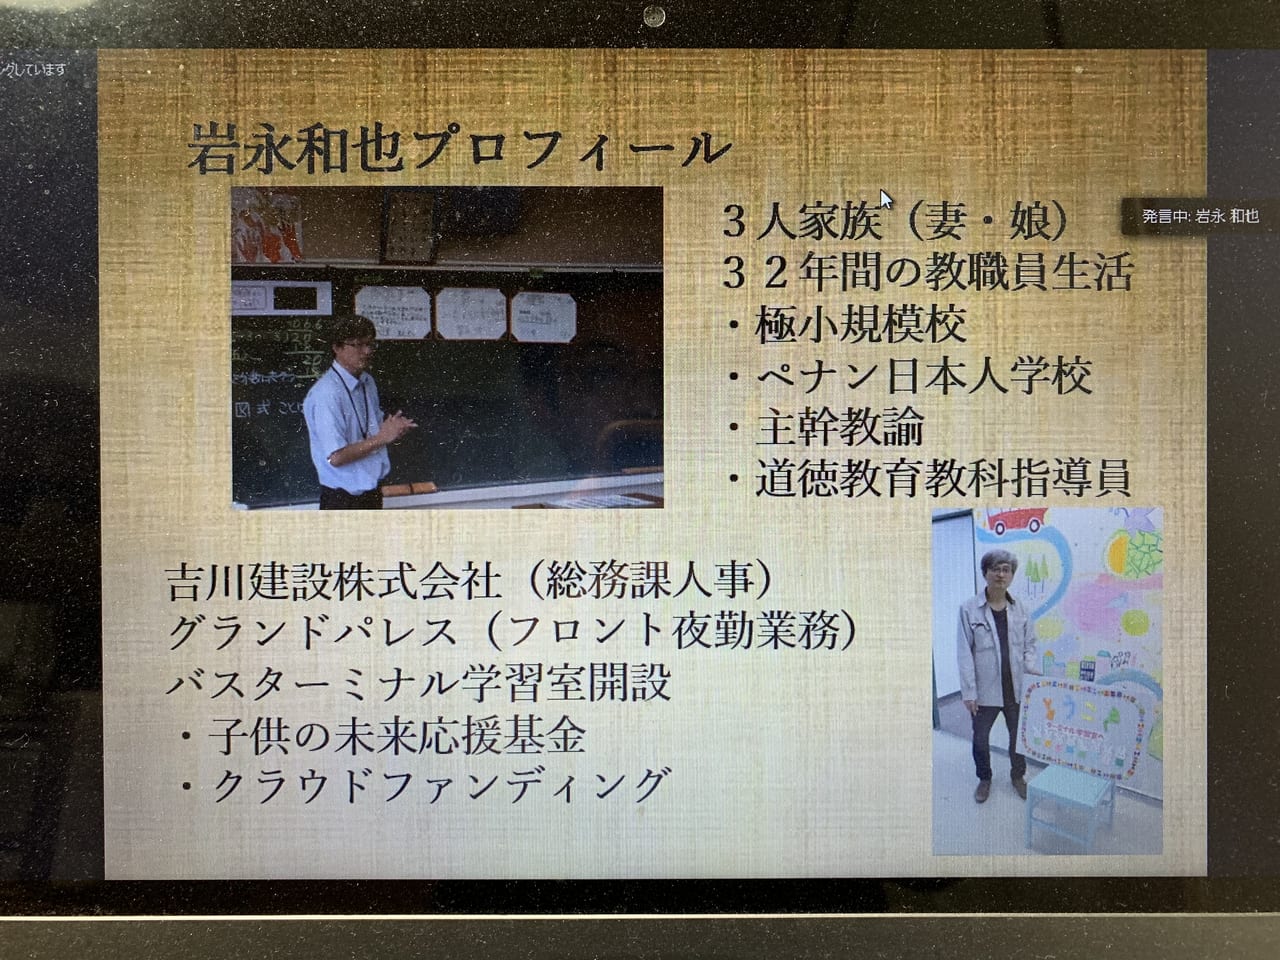 バス学習室岩永先生プロフ